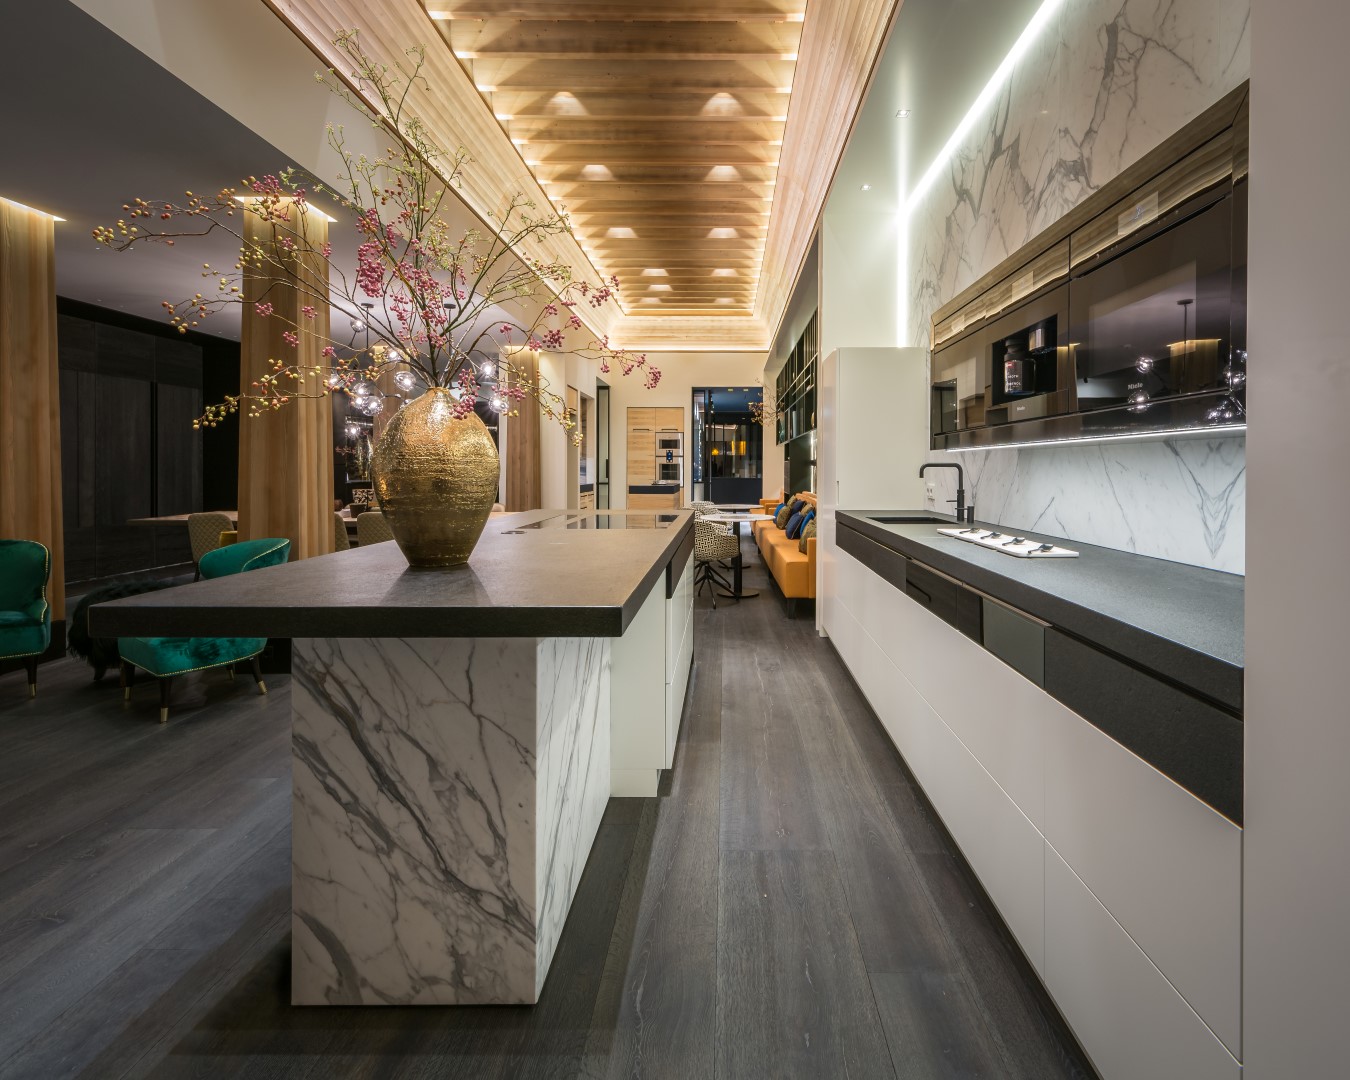 Bewerkt plafon met verlichting boven op maat gemaakte luxe keuken van natuursteen en graniet.